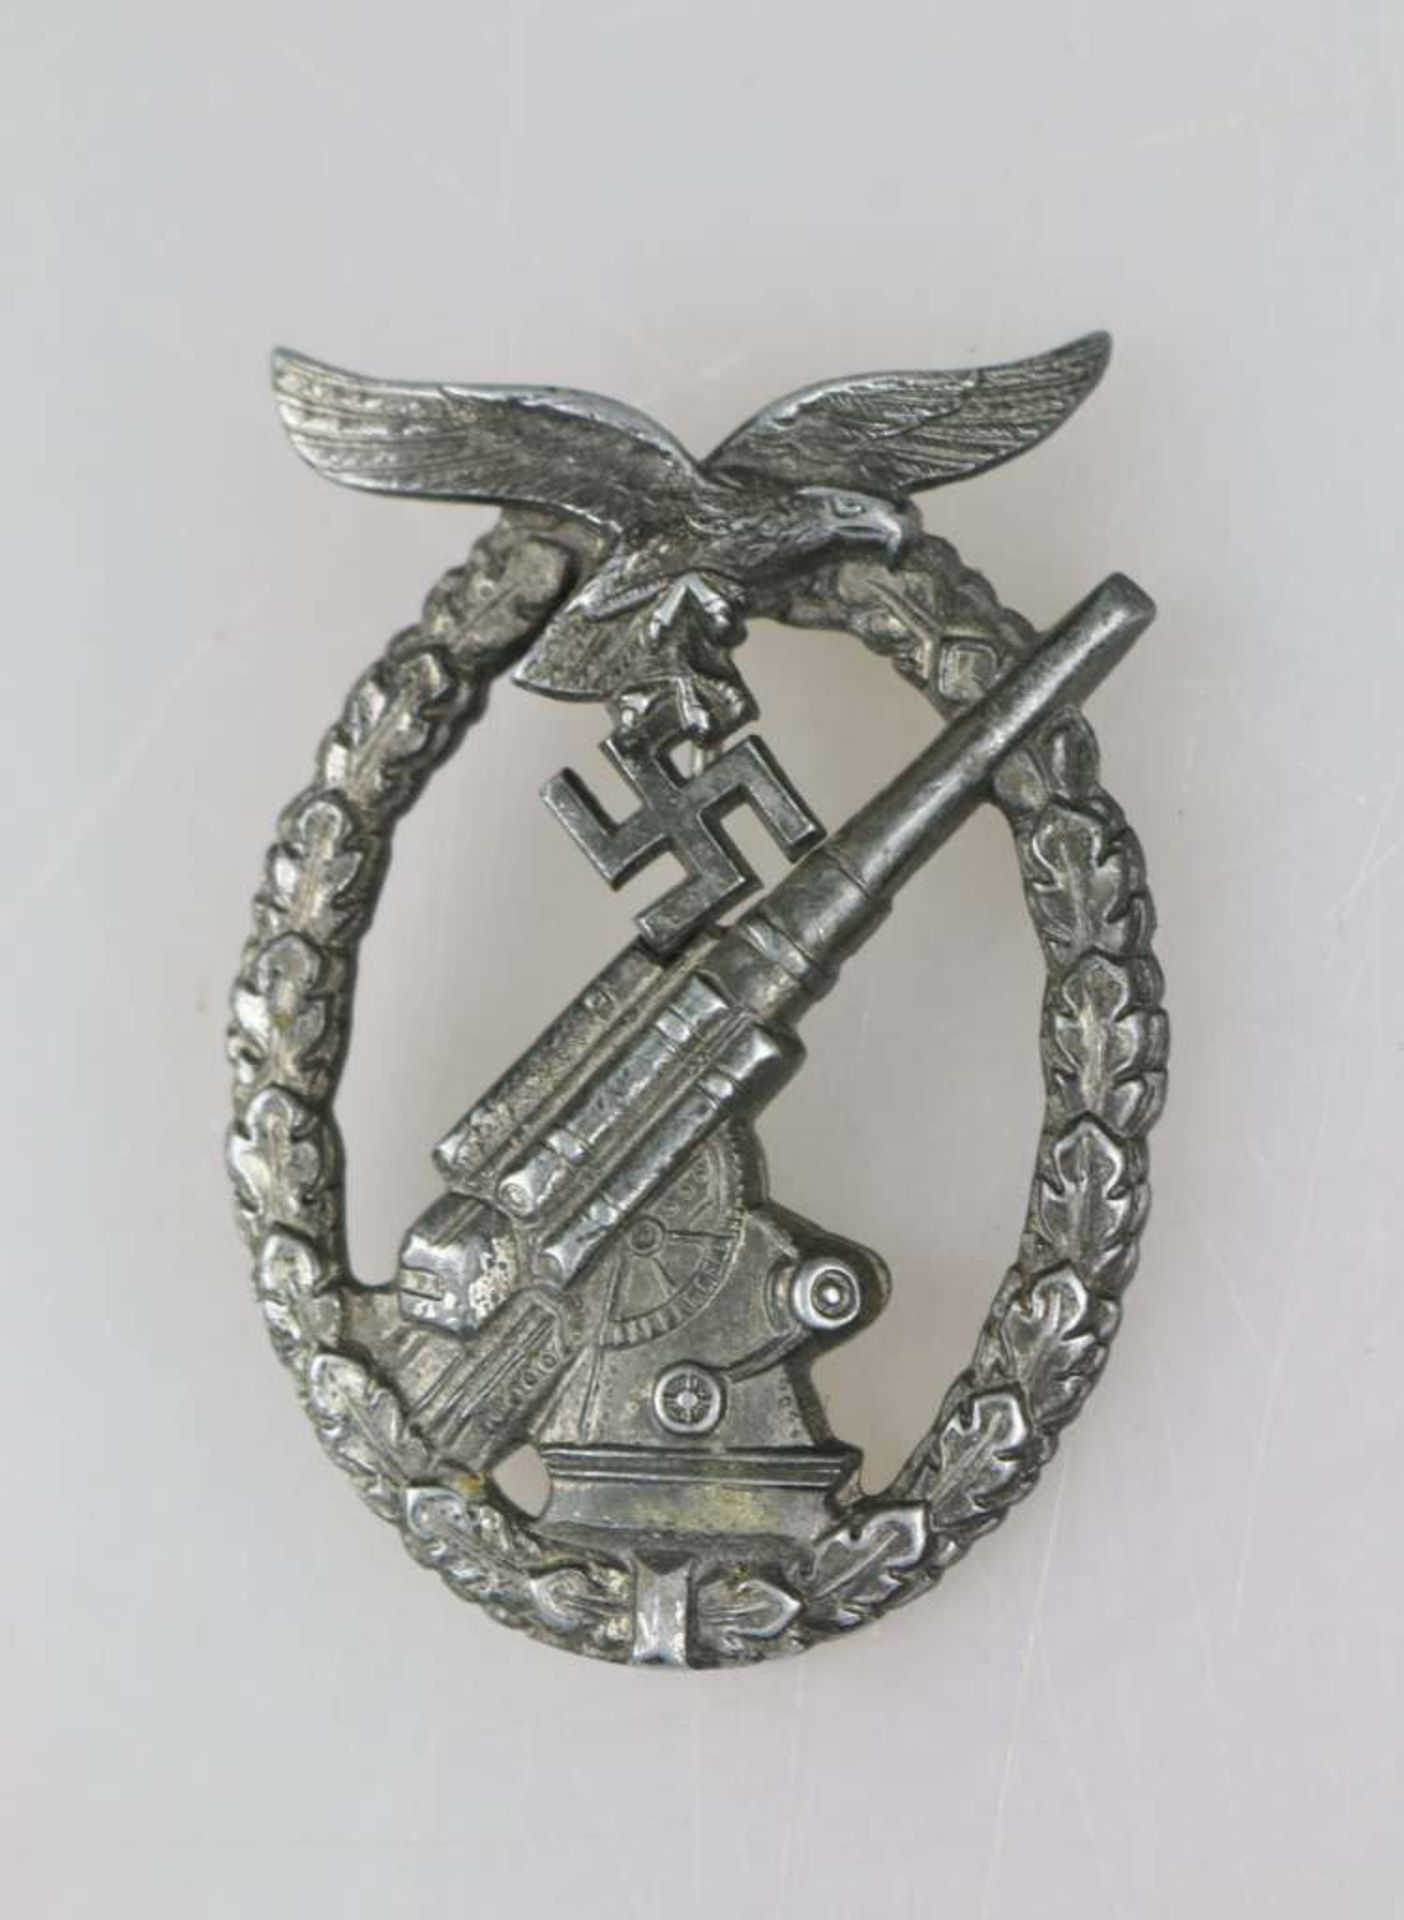 Flakkampfabzeichen der Luftwaffe, Feinzink, rückseitig gestempelt "ÜÜ" für E.F Wiedmann, - Bild 2 aus 4